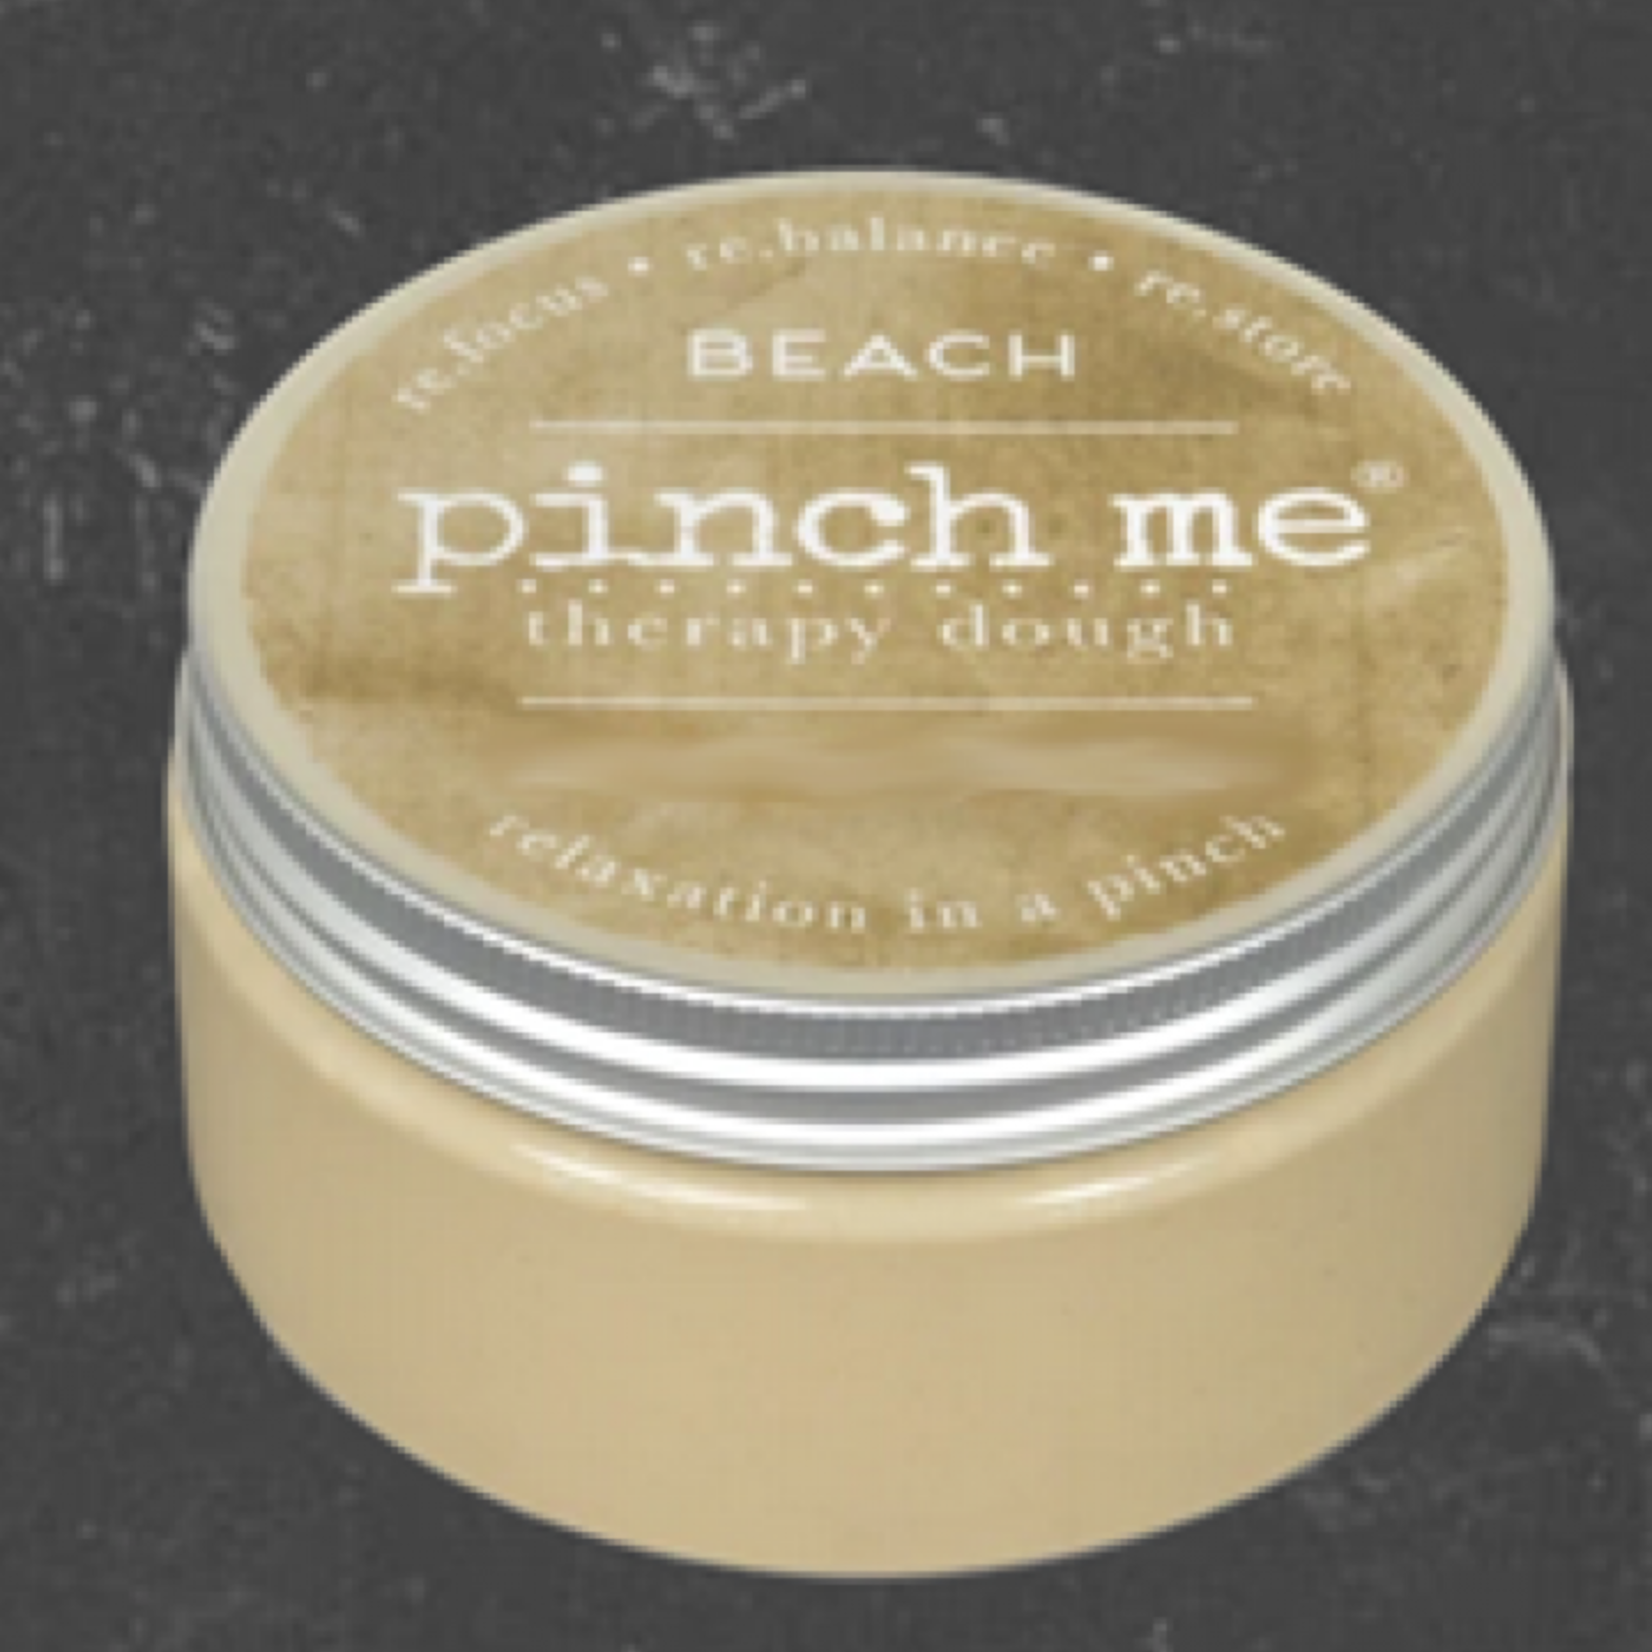 Pinch Me Therapy Dough 3oz - Beach